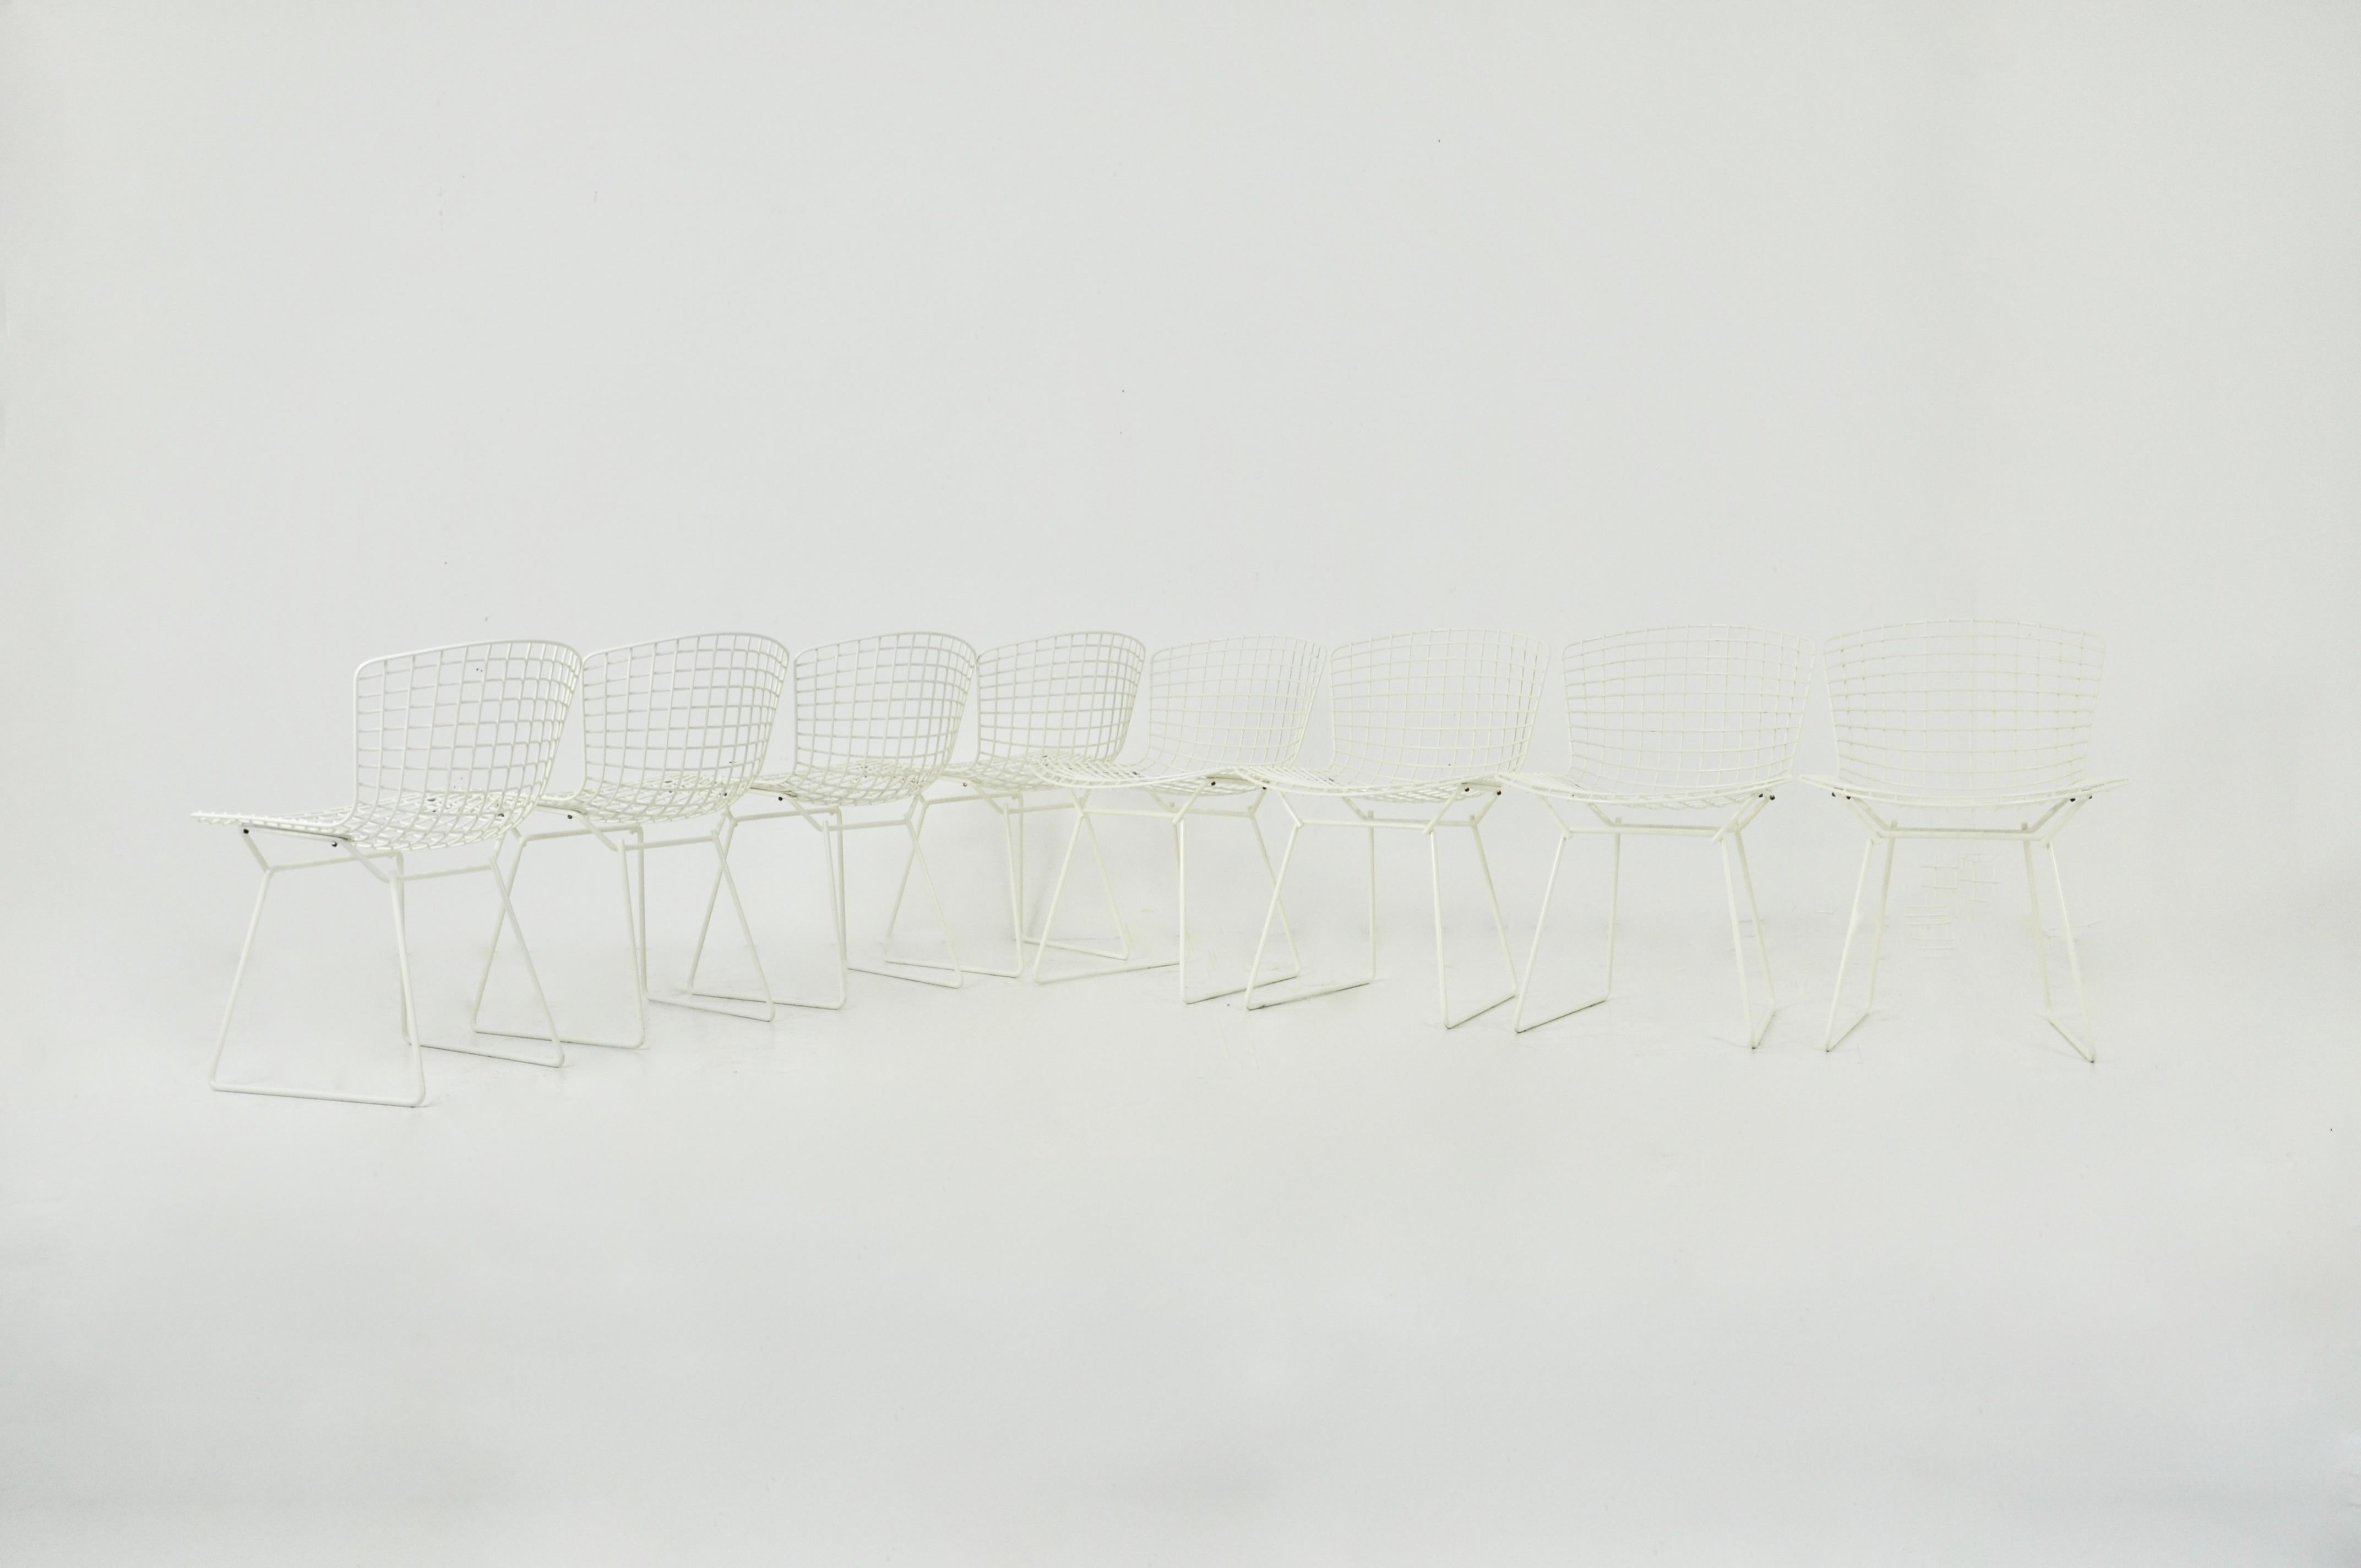 Satz von 8 weißen Metallstühlen. Sitzhöhe 44 cm. Abnutzung und Verschleiß durch Zeit und Alter der Stühle.